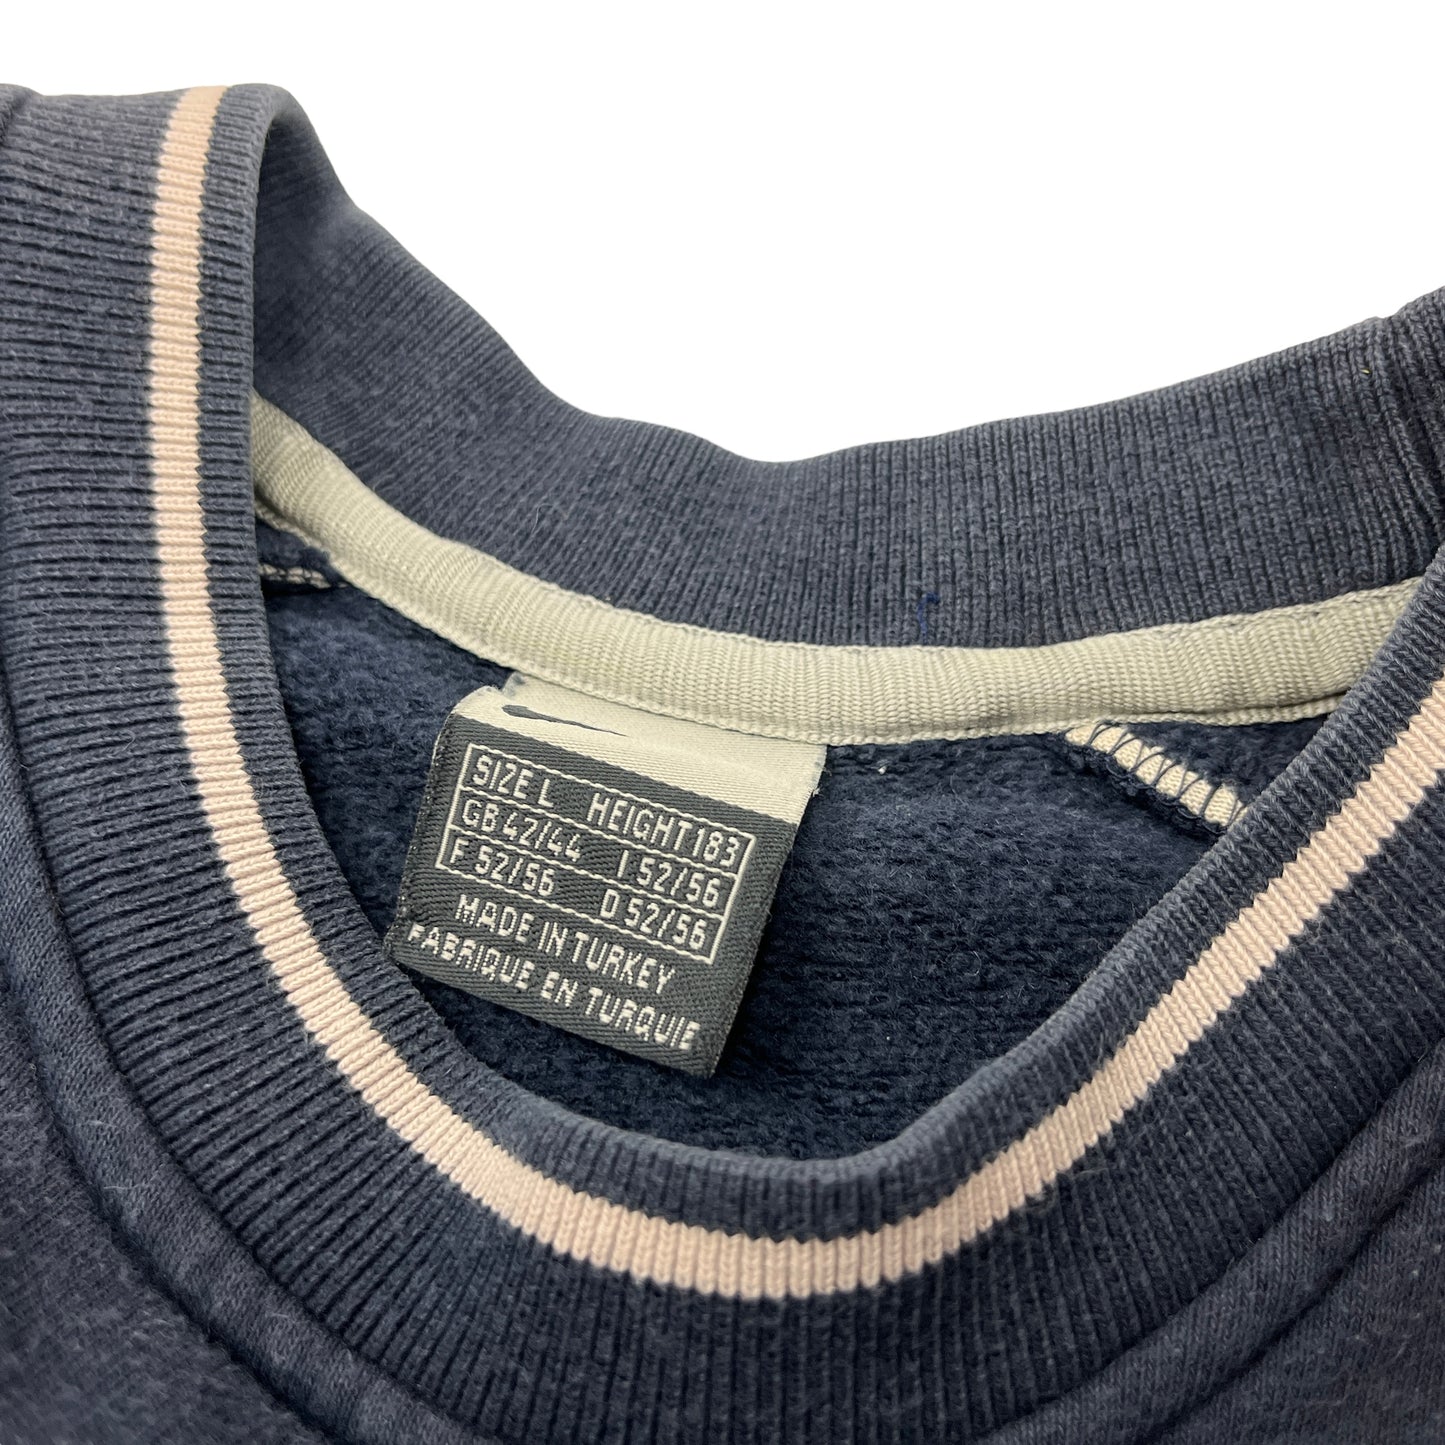 01131 Nike 90s Sweater